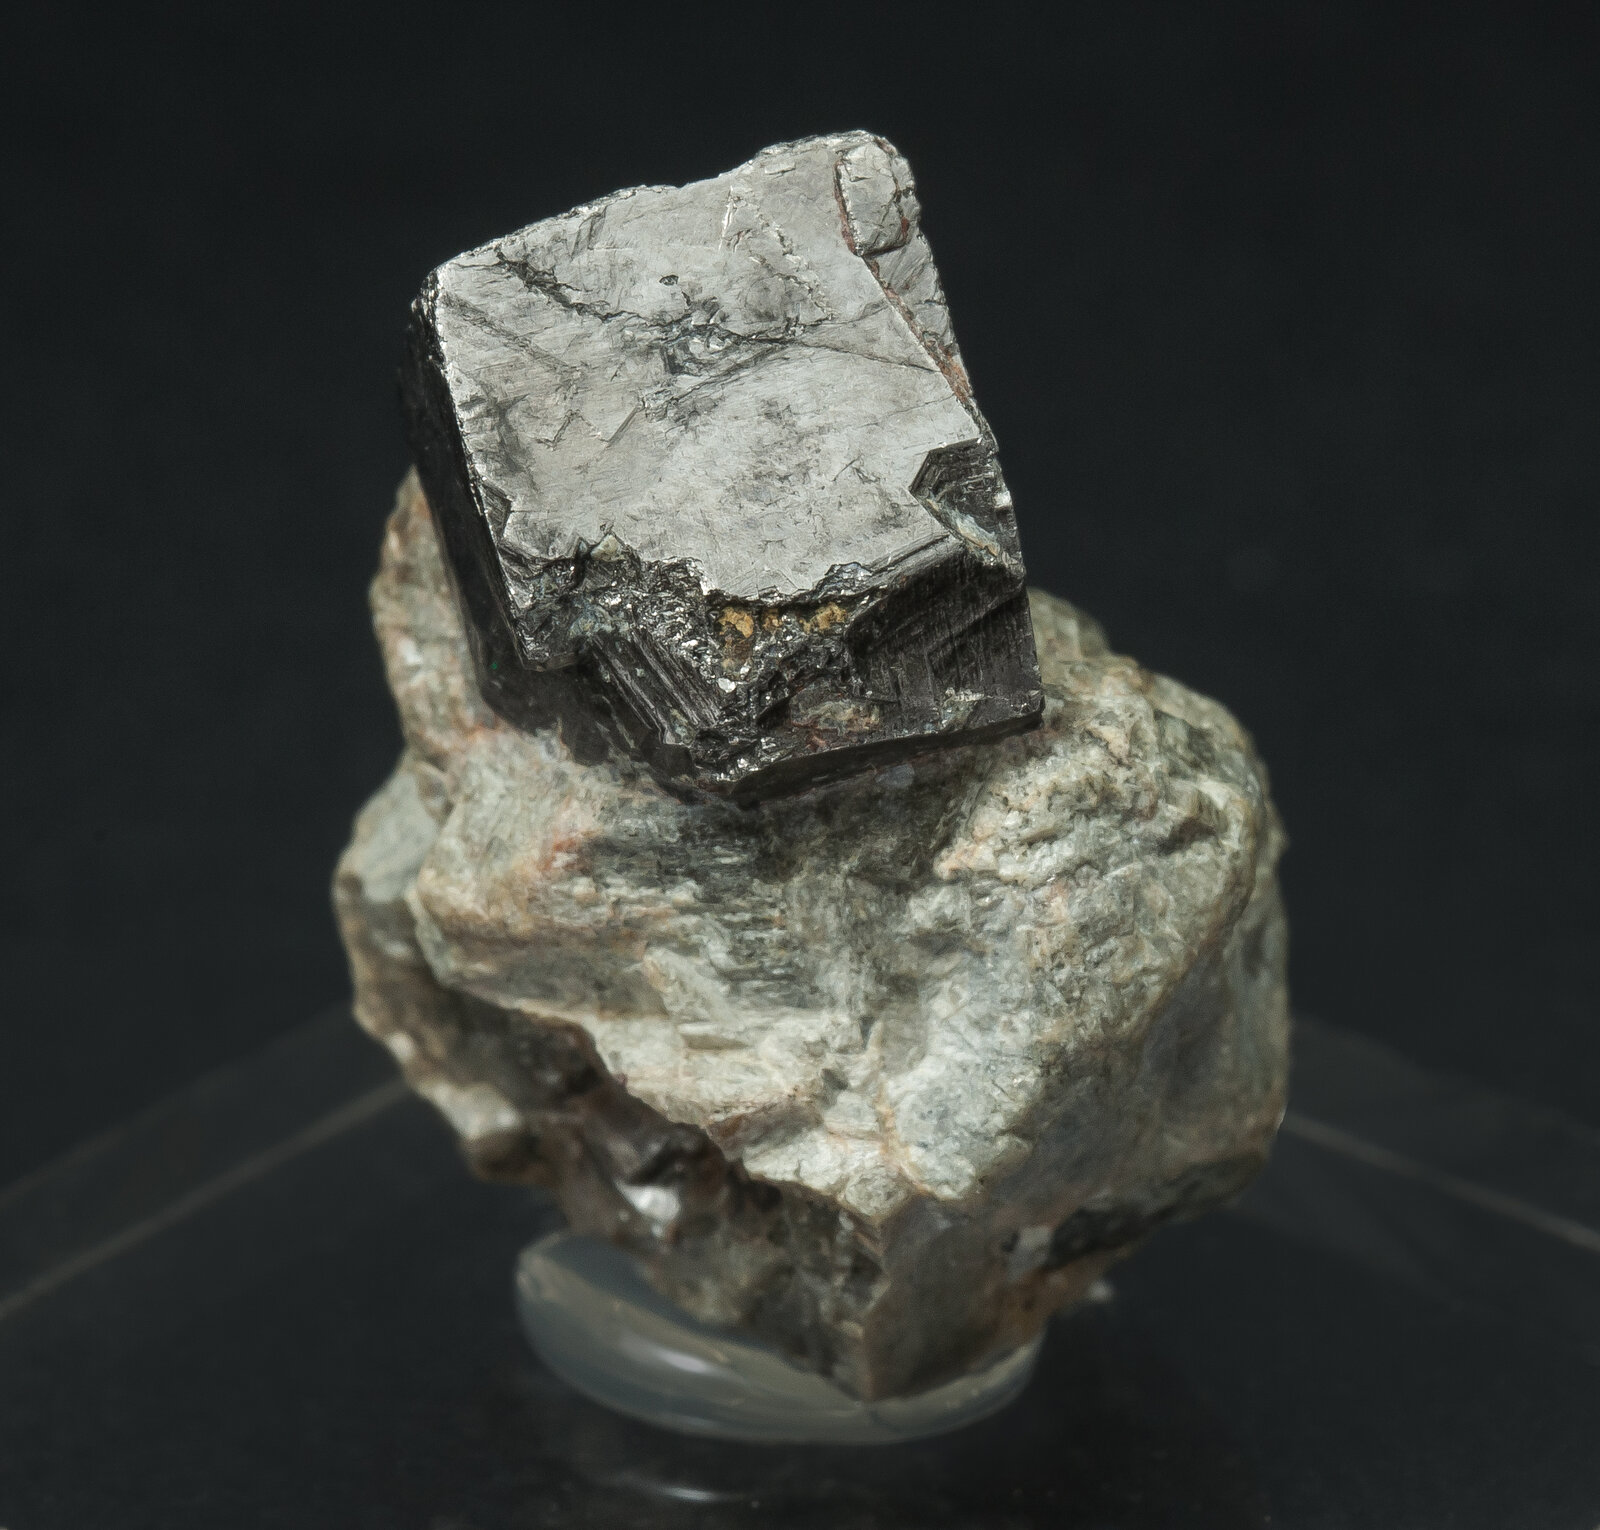 specimens/s_imagesAP2/Cobaltite-MCR66AP2r.jpg